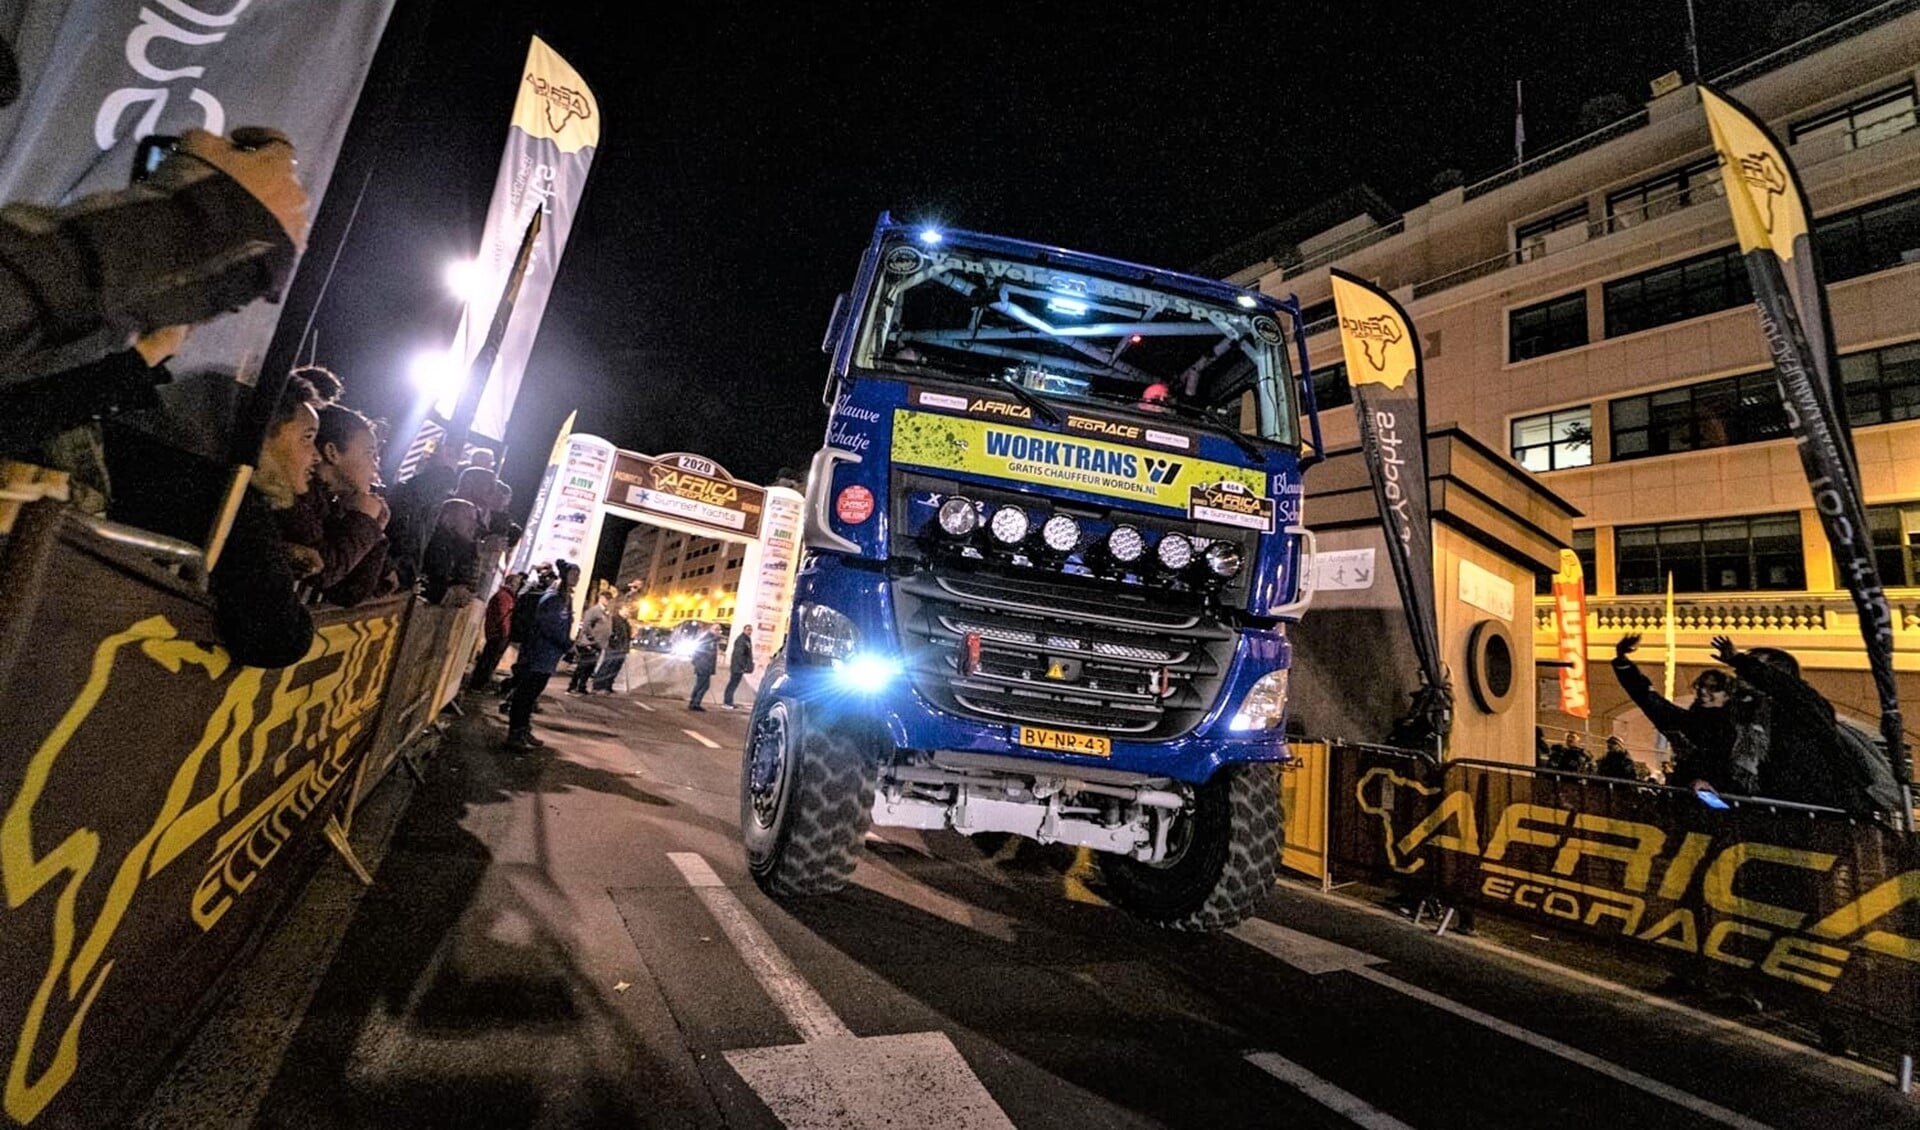 De rallytruck van Van Velsen Rallysport aan de (show)start van de Africa Eco Race in Monaco (foto: Tim Buitenhuis).